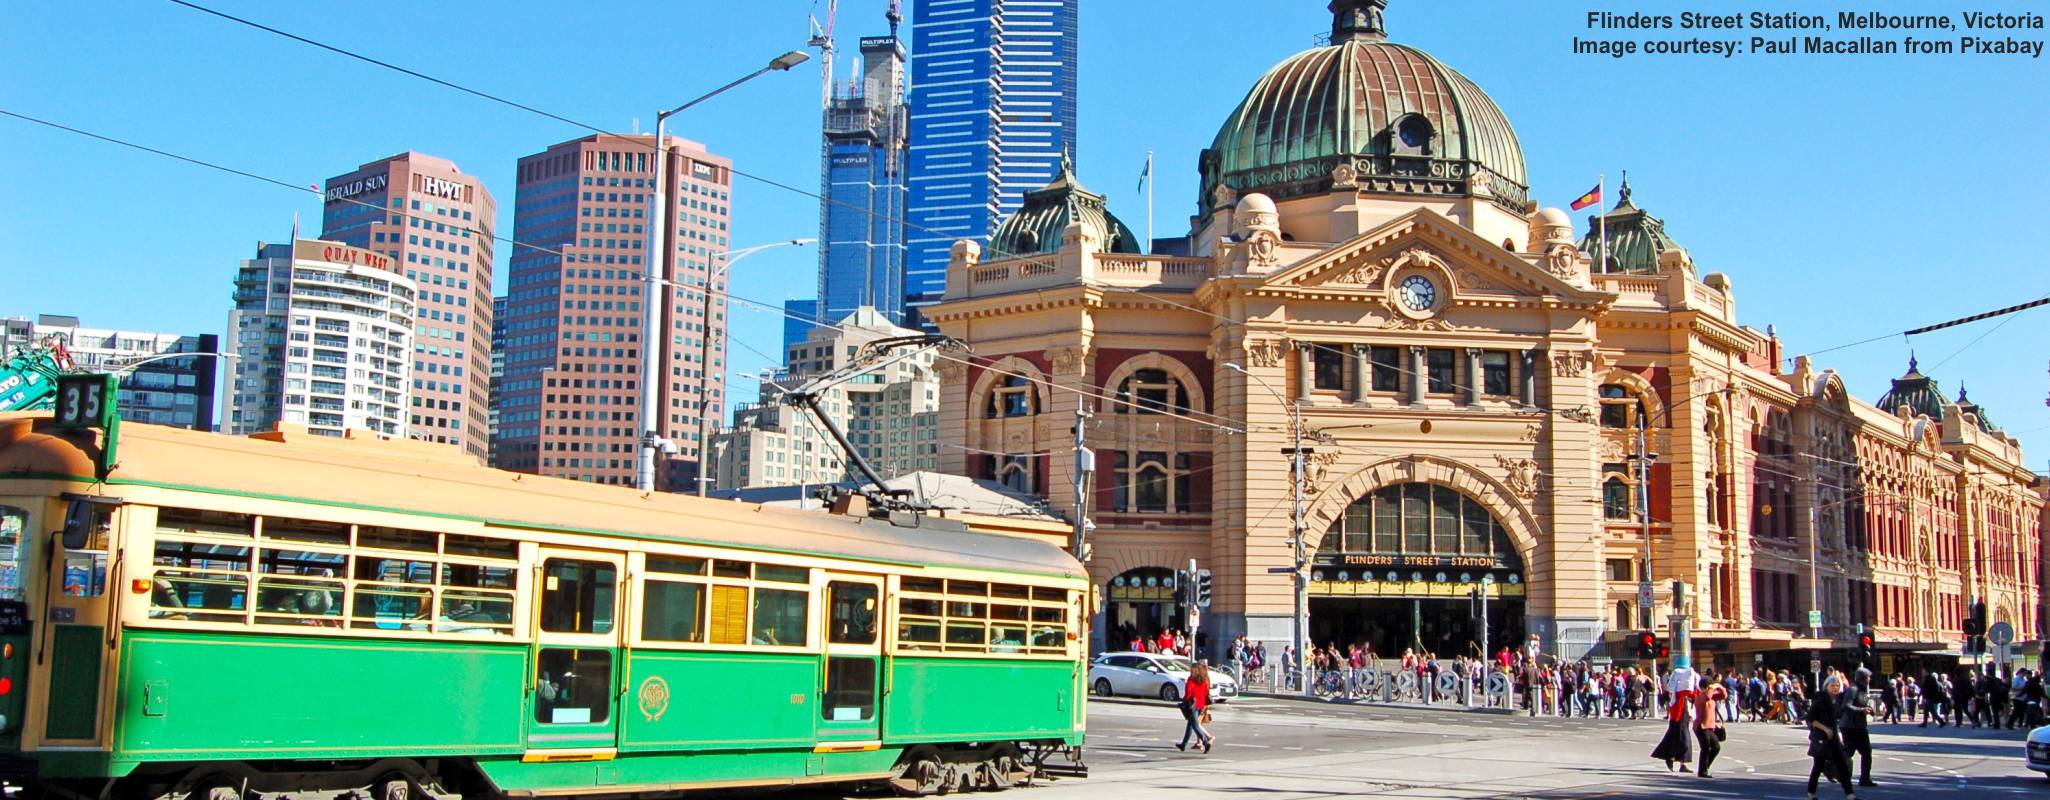 Melbourne City Centre image